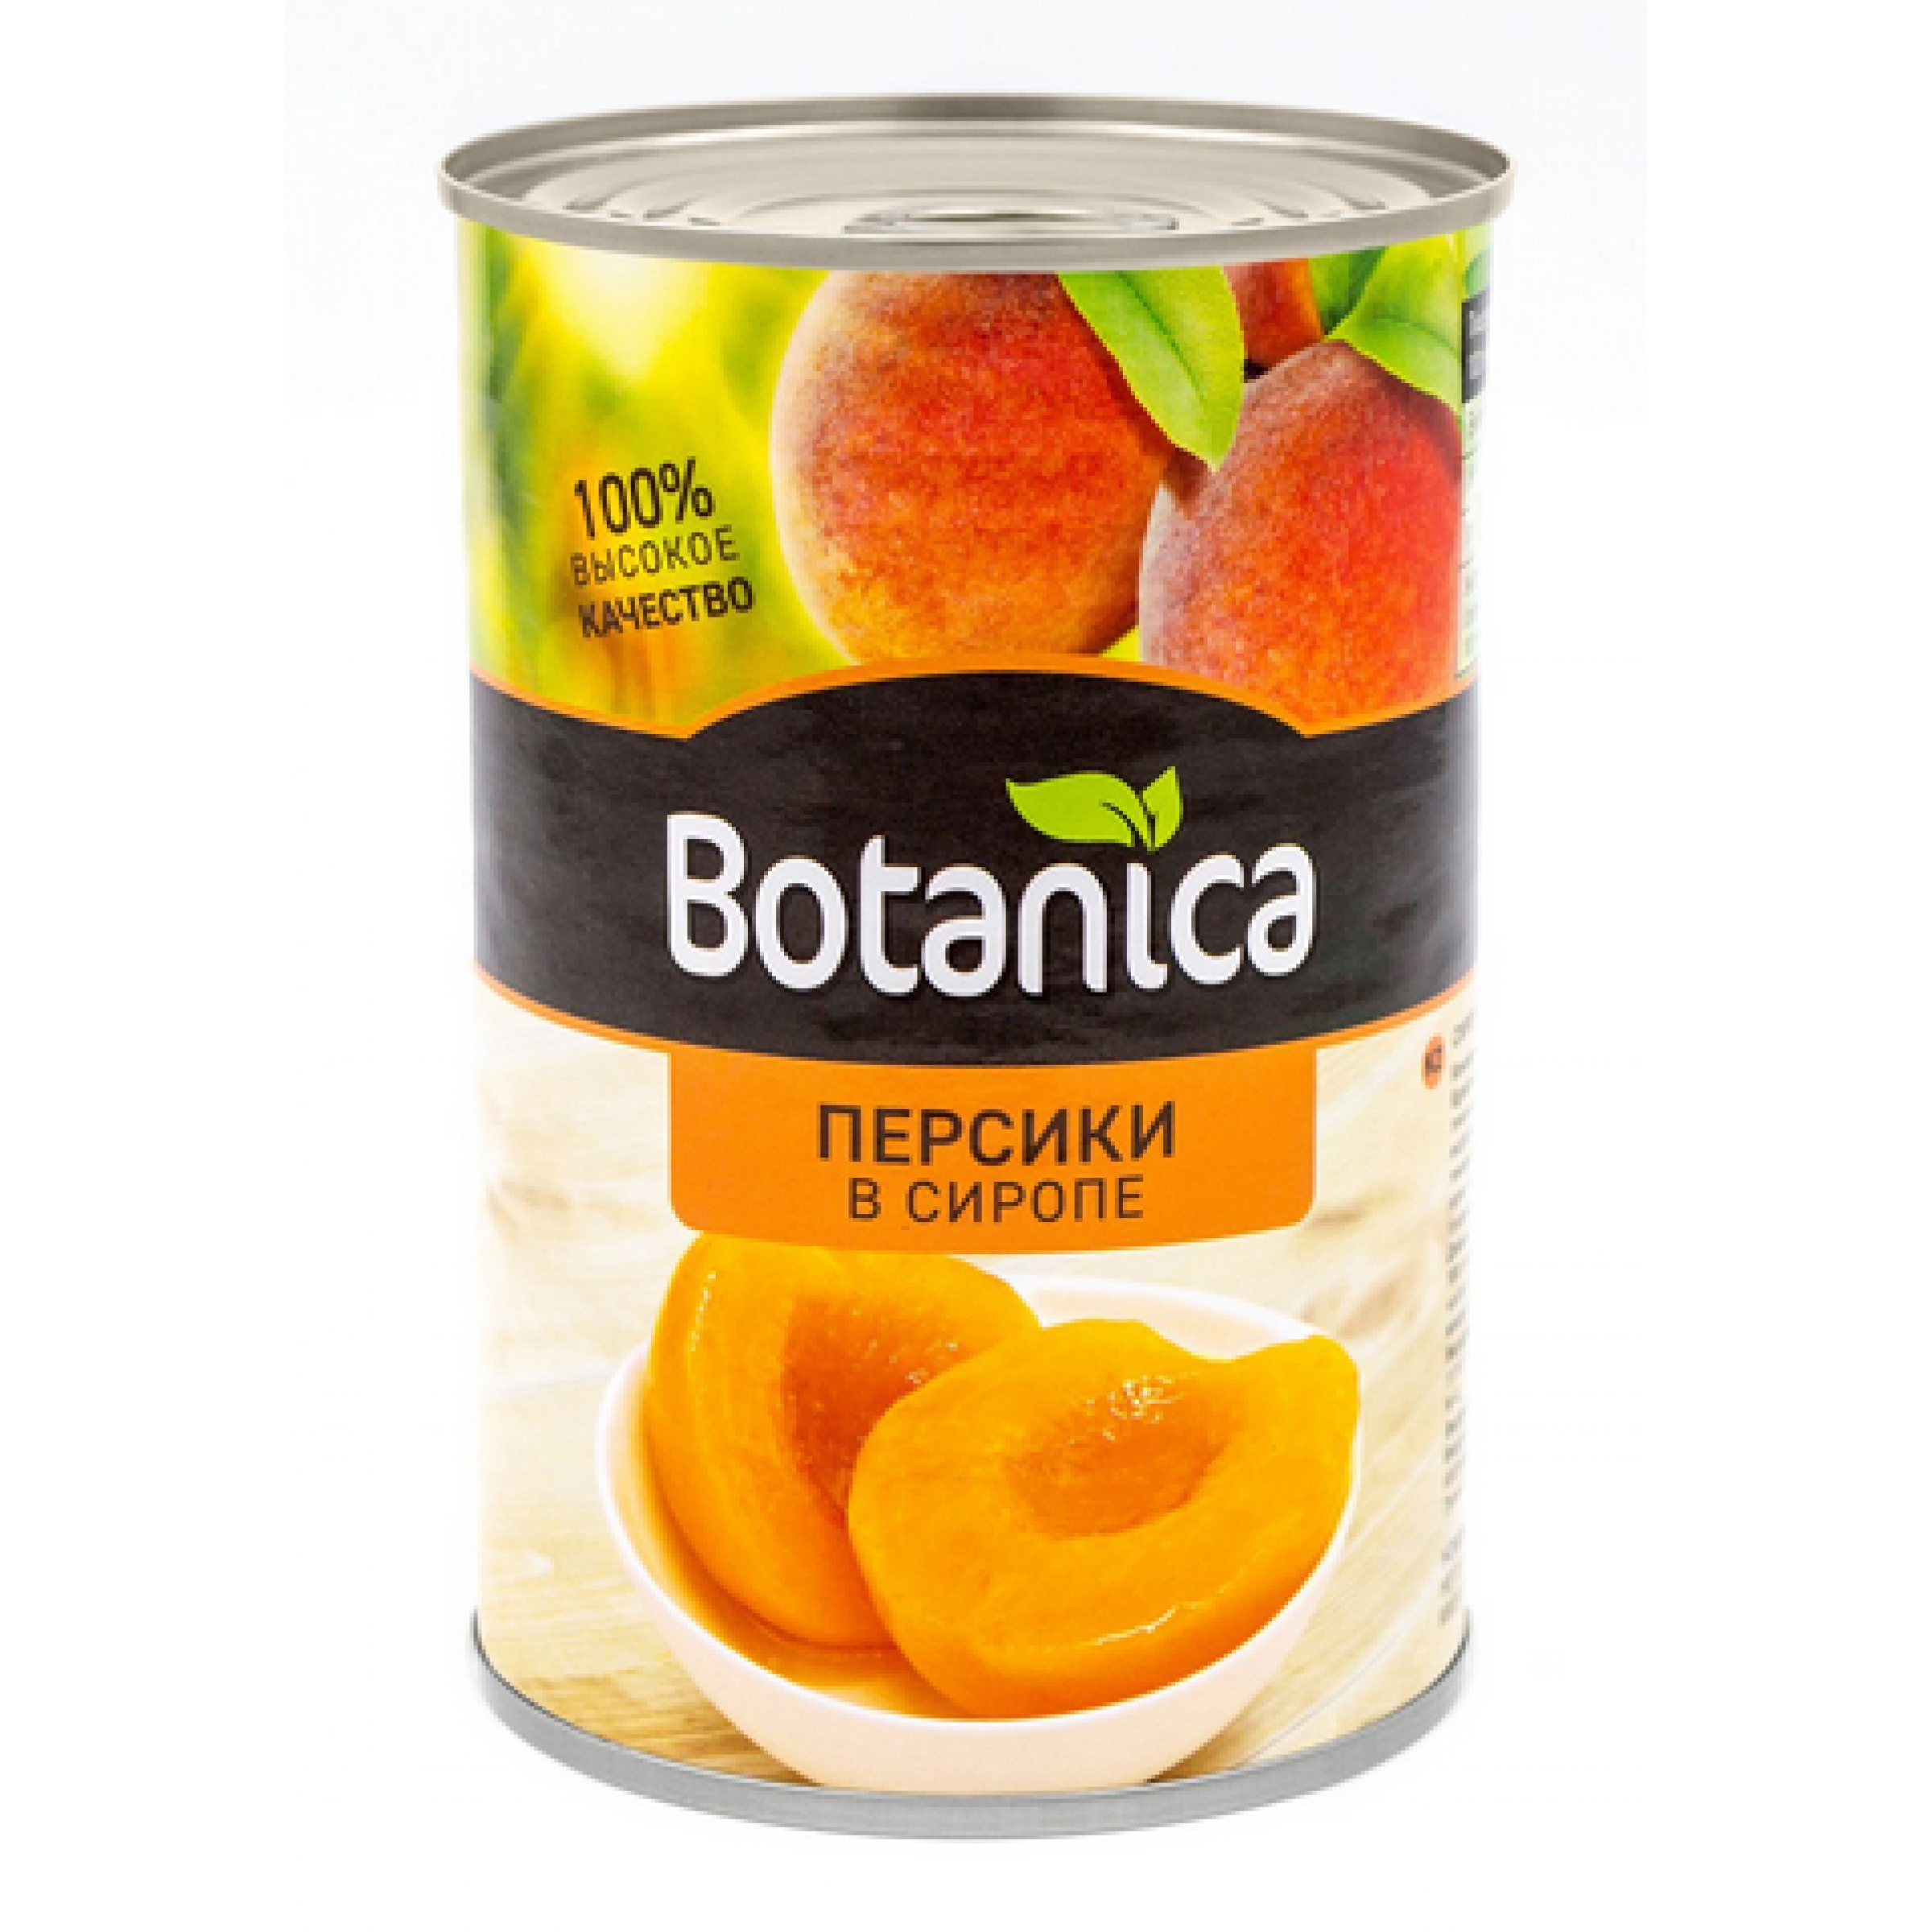 Персики половинки в сиропе консервированные Botanica, 425 мл